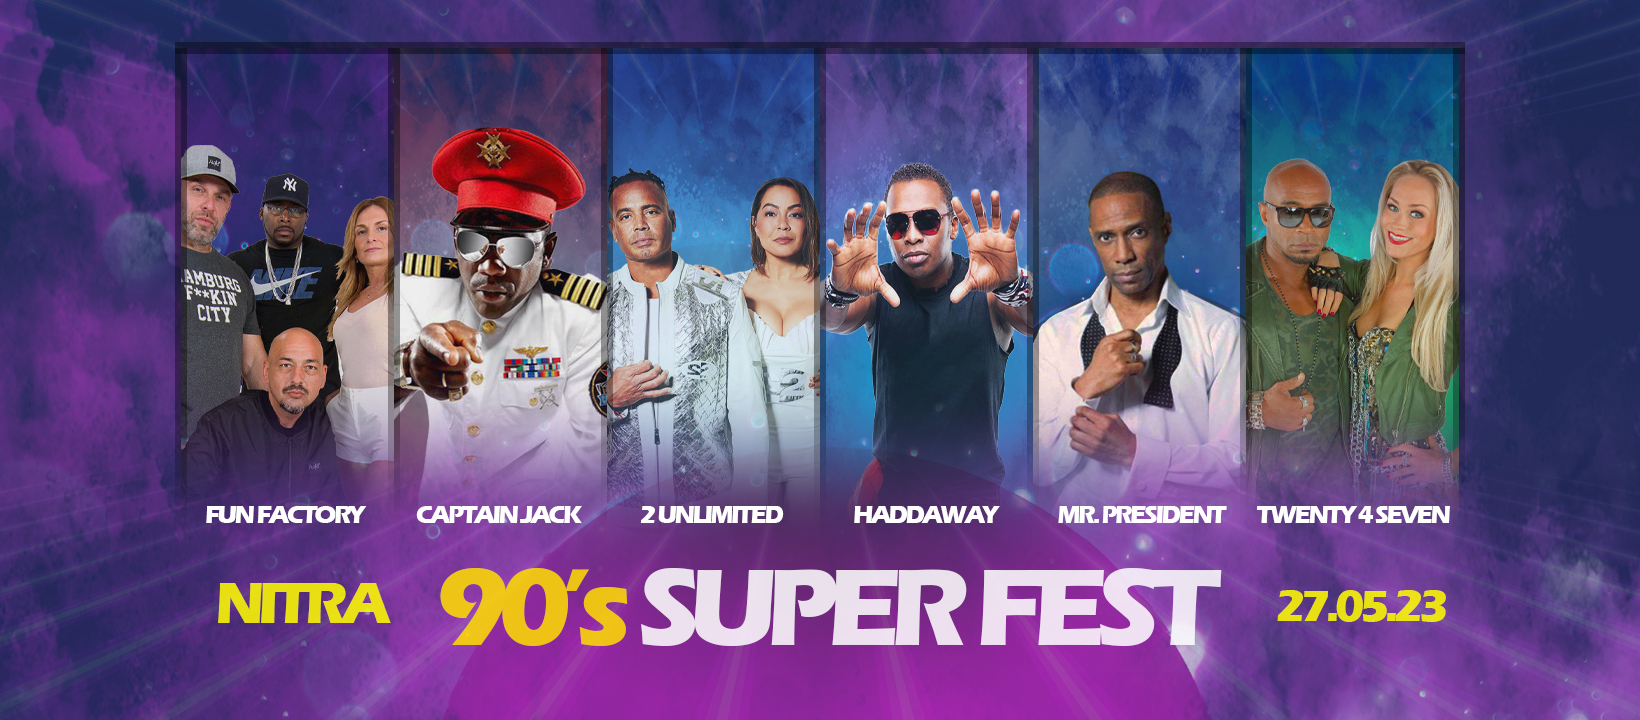 90’s Super Fest 2023: Na ktorých interpretov sa môžeme tešiť?